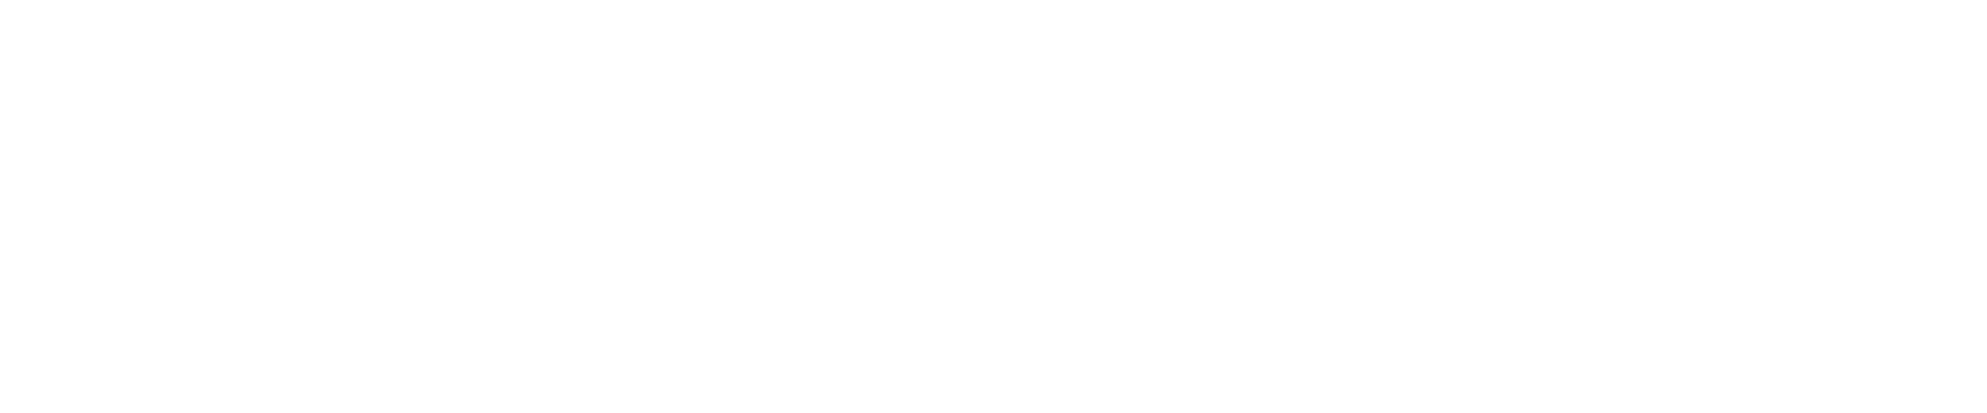 XC academy